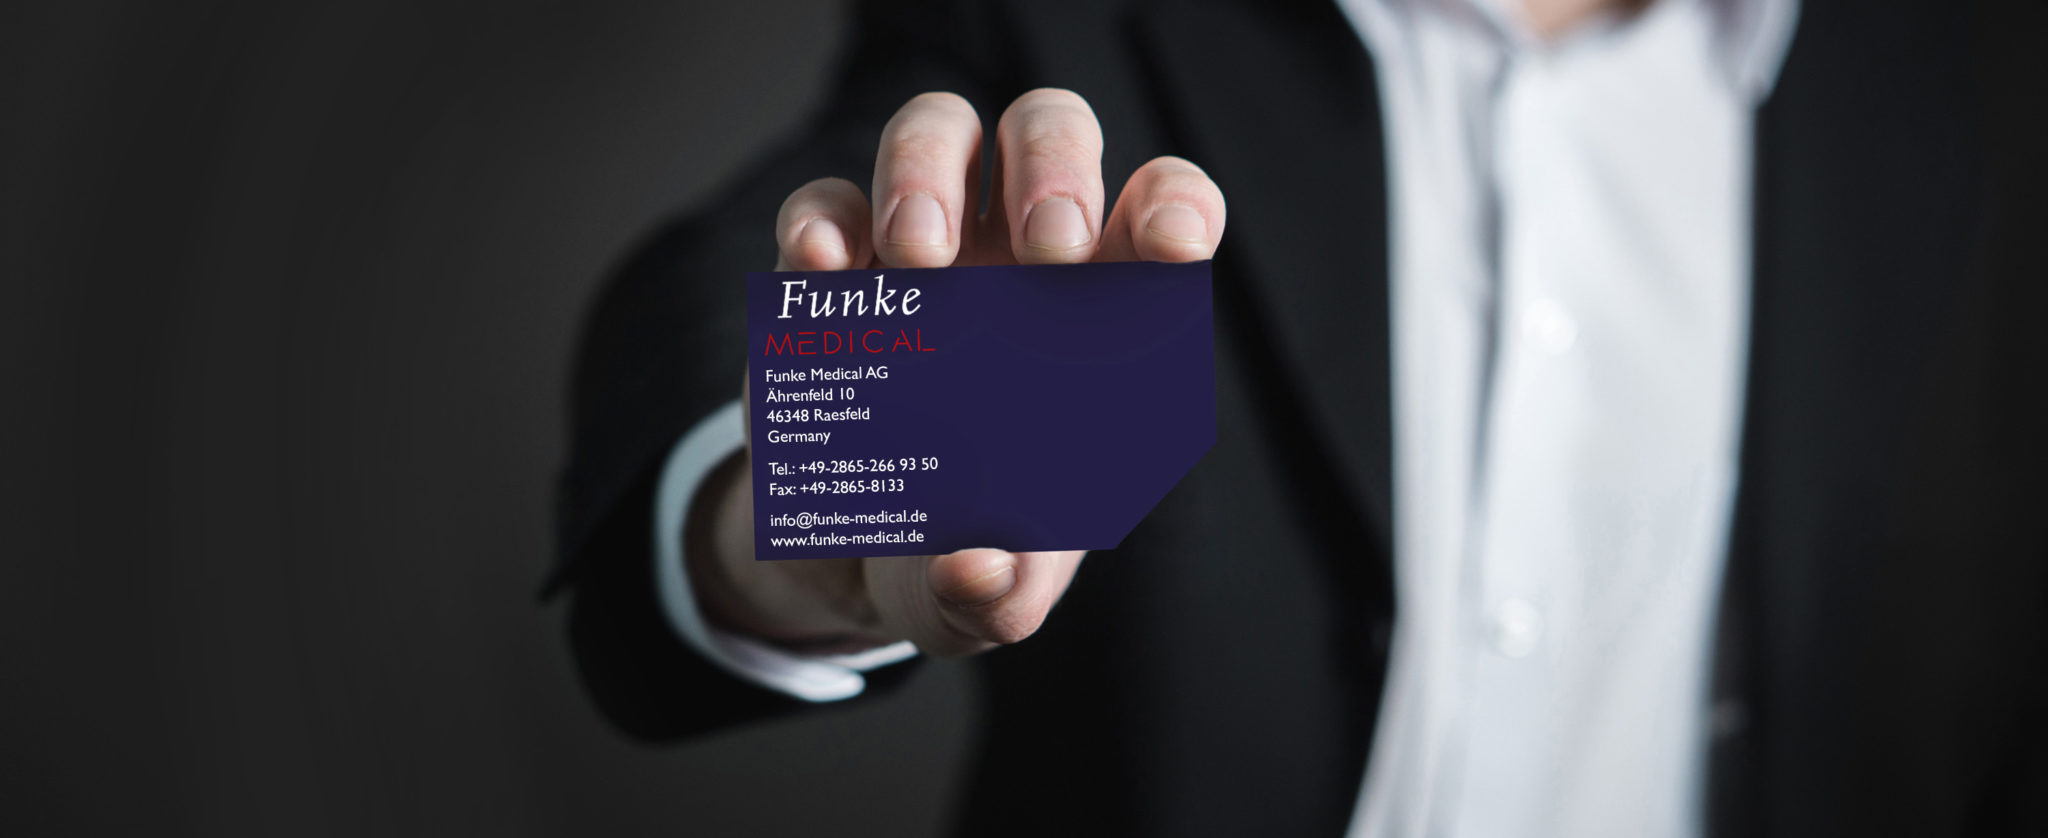 Business card of Funke Medical GmbH